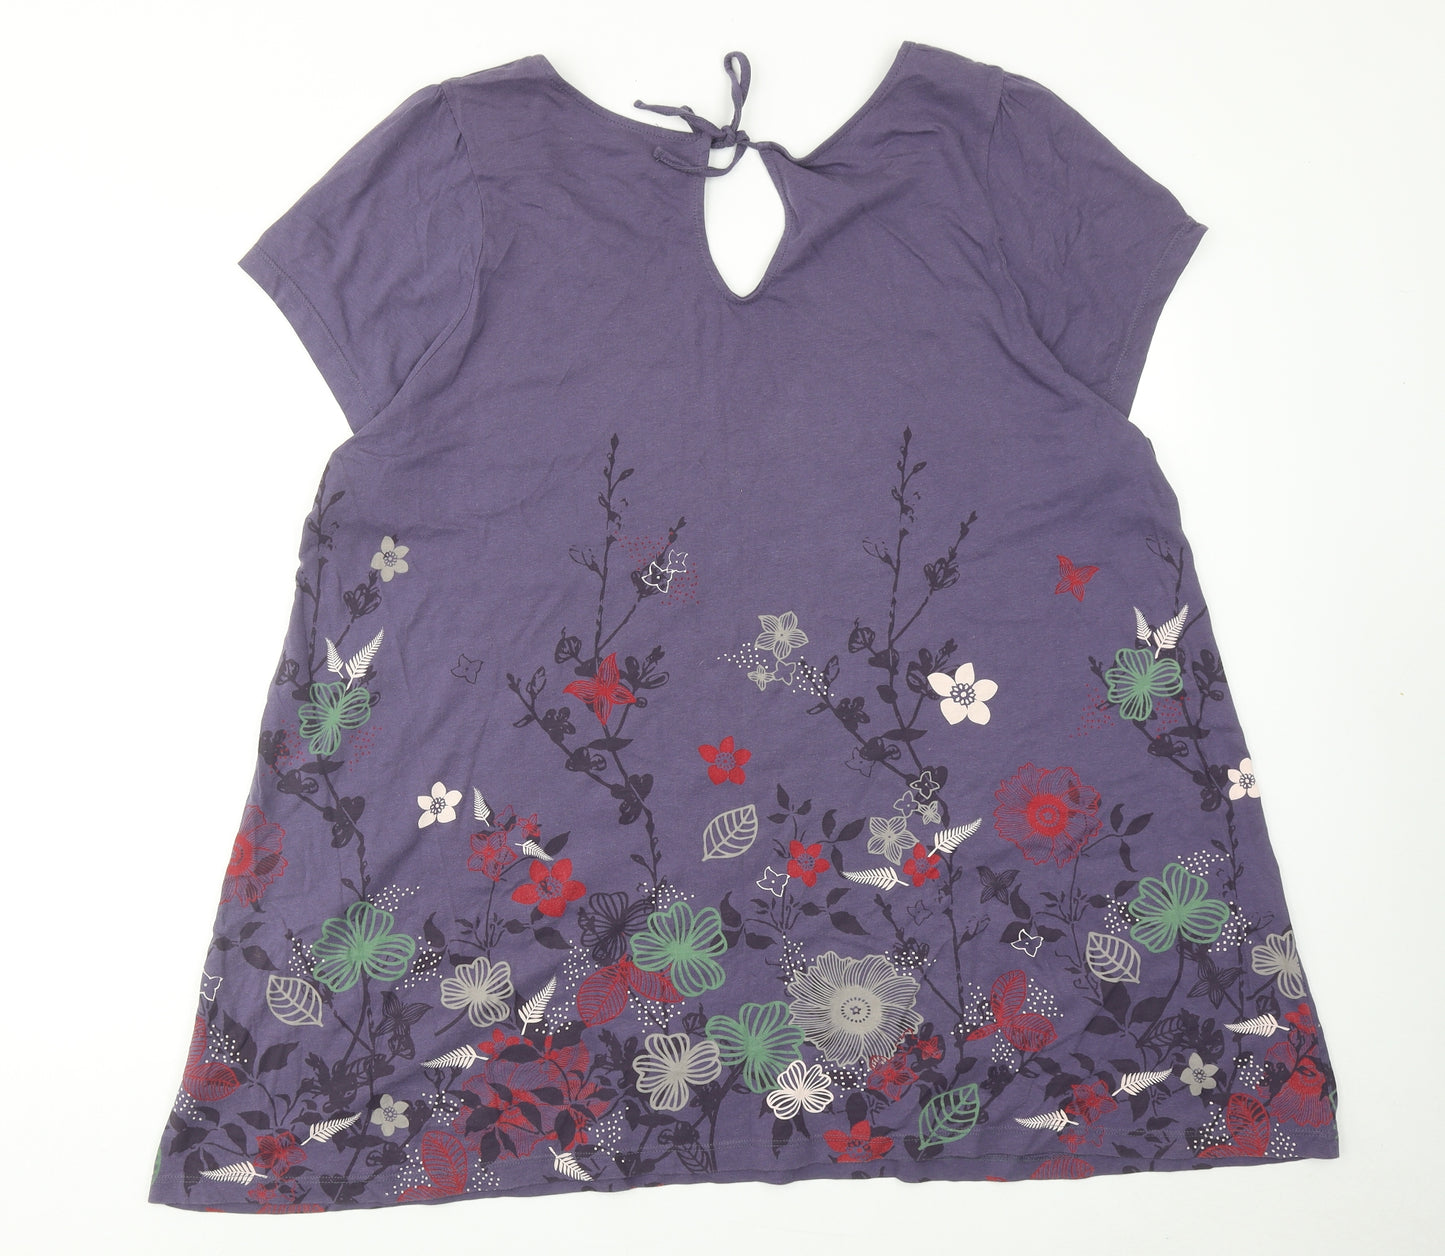 Evans Womens Purple Cotton Tunic T-Shirt Size 22 Scoop Neck - Flower Detail